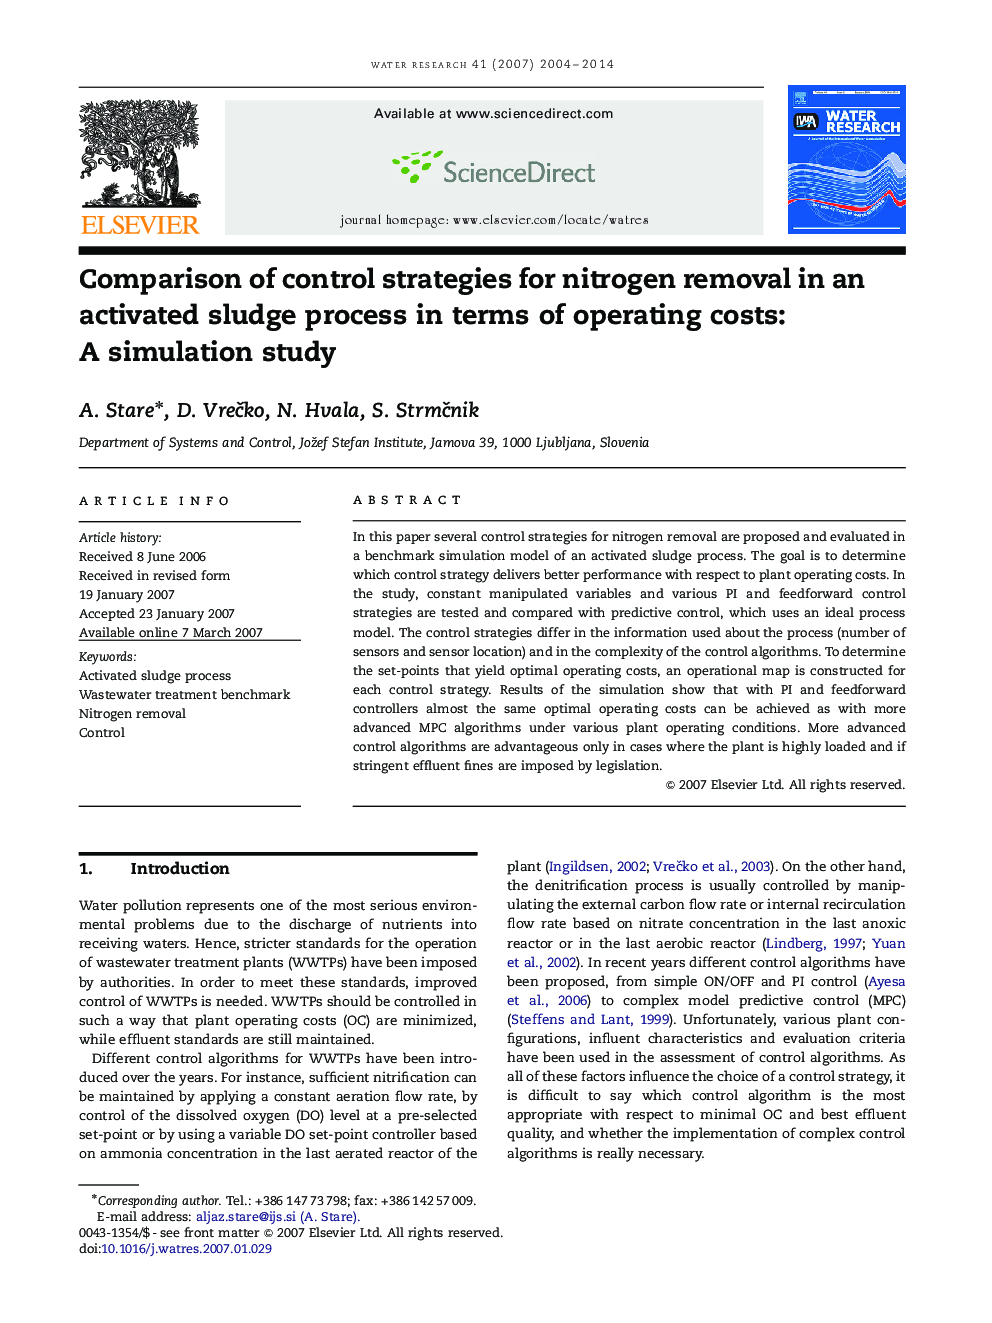 مقایسه استراتژی های کنترل حذف نیتروژن در یک فرآیند لجن فعال از نظر هزینه های عملیاتی: یک مطالعه شبیه سازی 